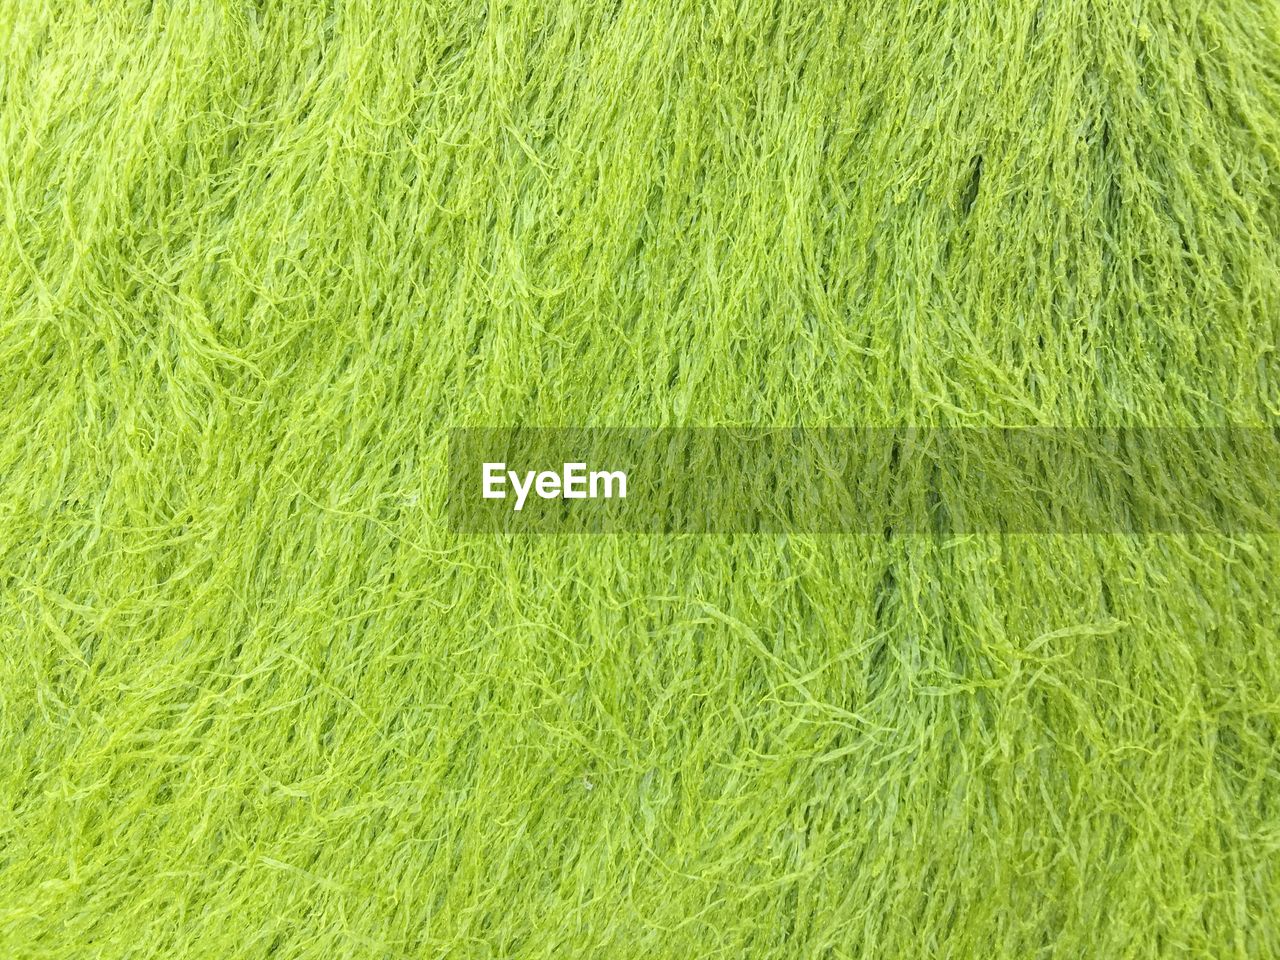 Full frame shot of green grassy field